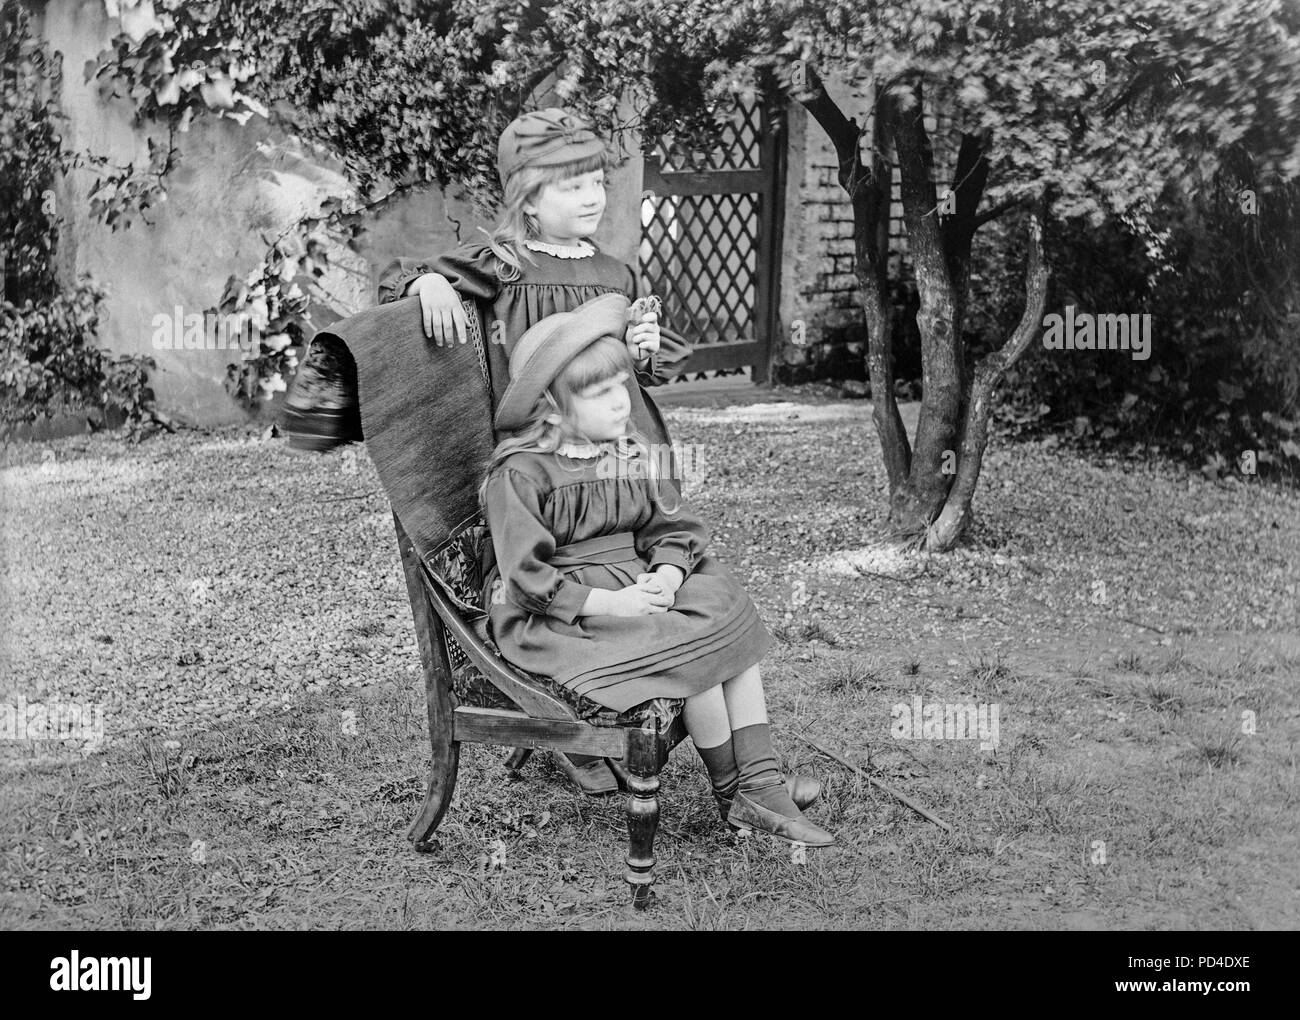 Fin photographie victorienne de deux soeurs, l'un assis, les autres debout, dans un jardin en Angleterre. Photo montre les détails de la mode des vêtements pour enfants de l'époque. Banque D'Images